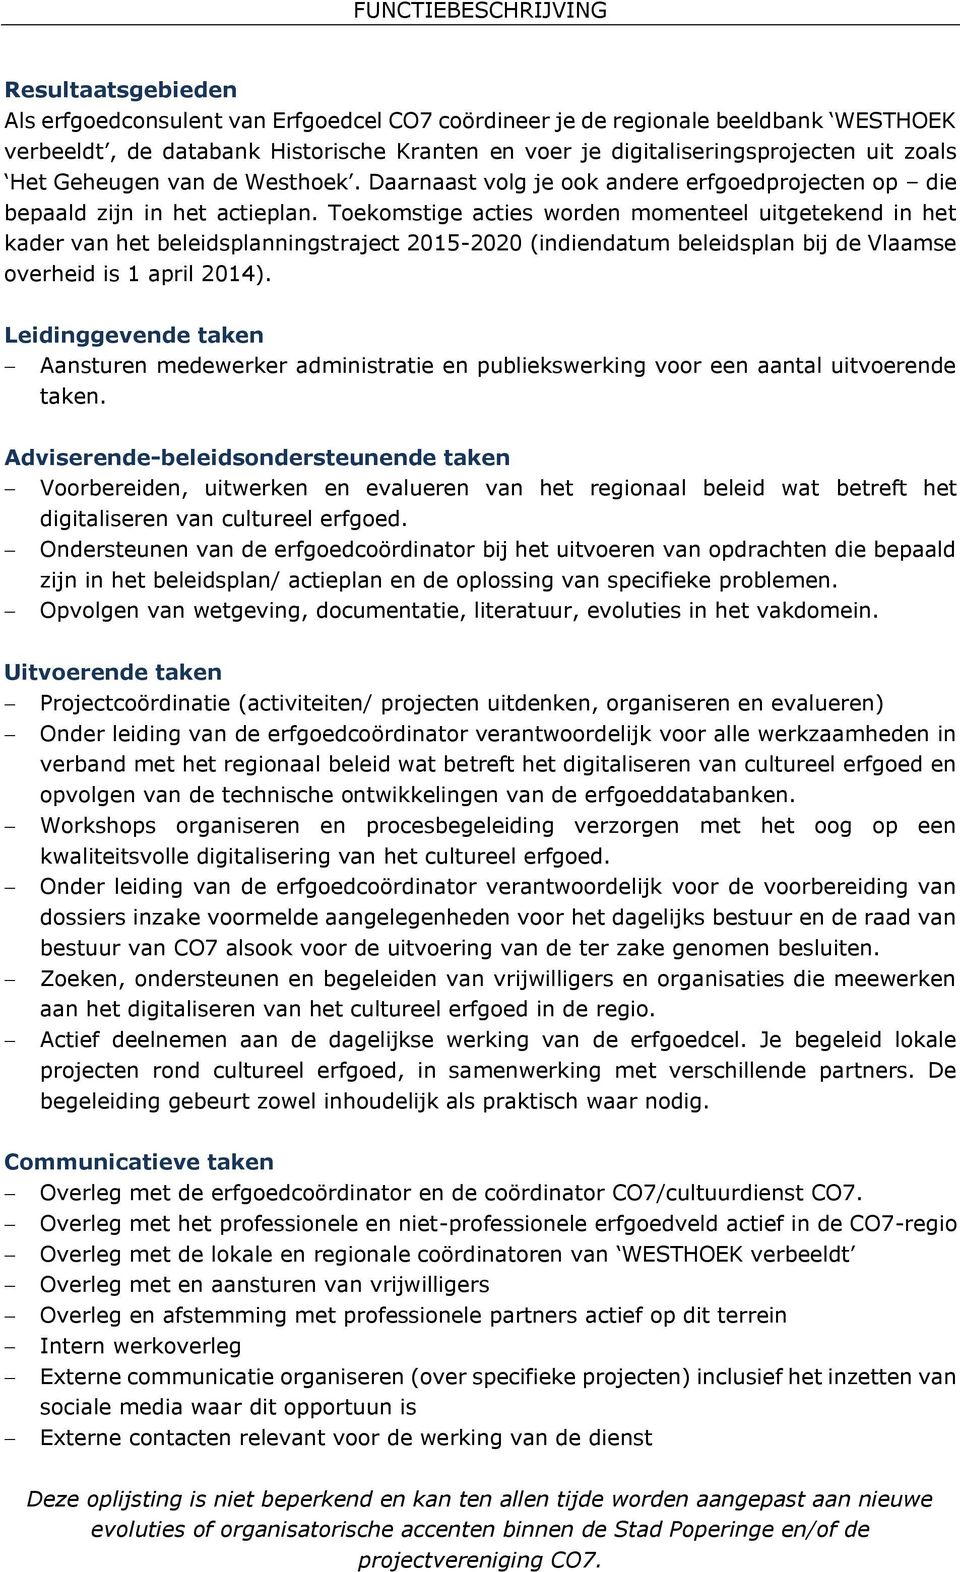 Toekomstige acties worden momenteel uitgetekend in het kader van het beleidsplanningstraject 2015-2020 (indiendatum beleidsplan bij de Vlaamse overheid is 1 april 2014).